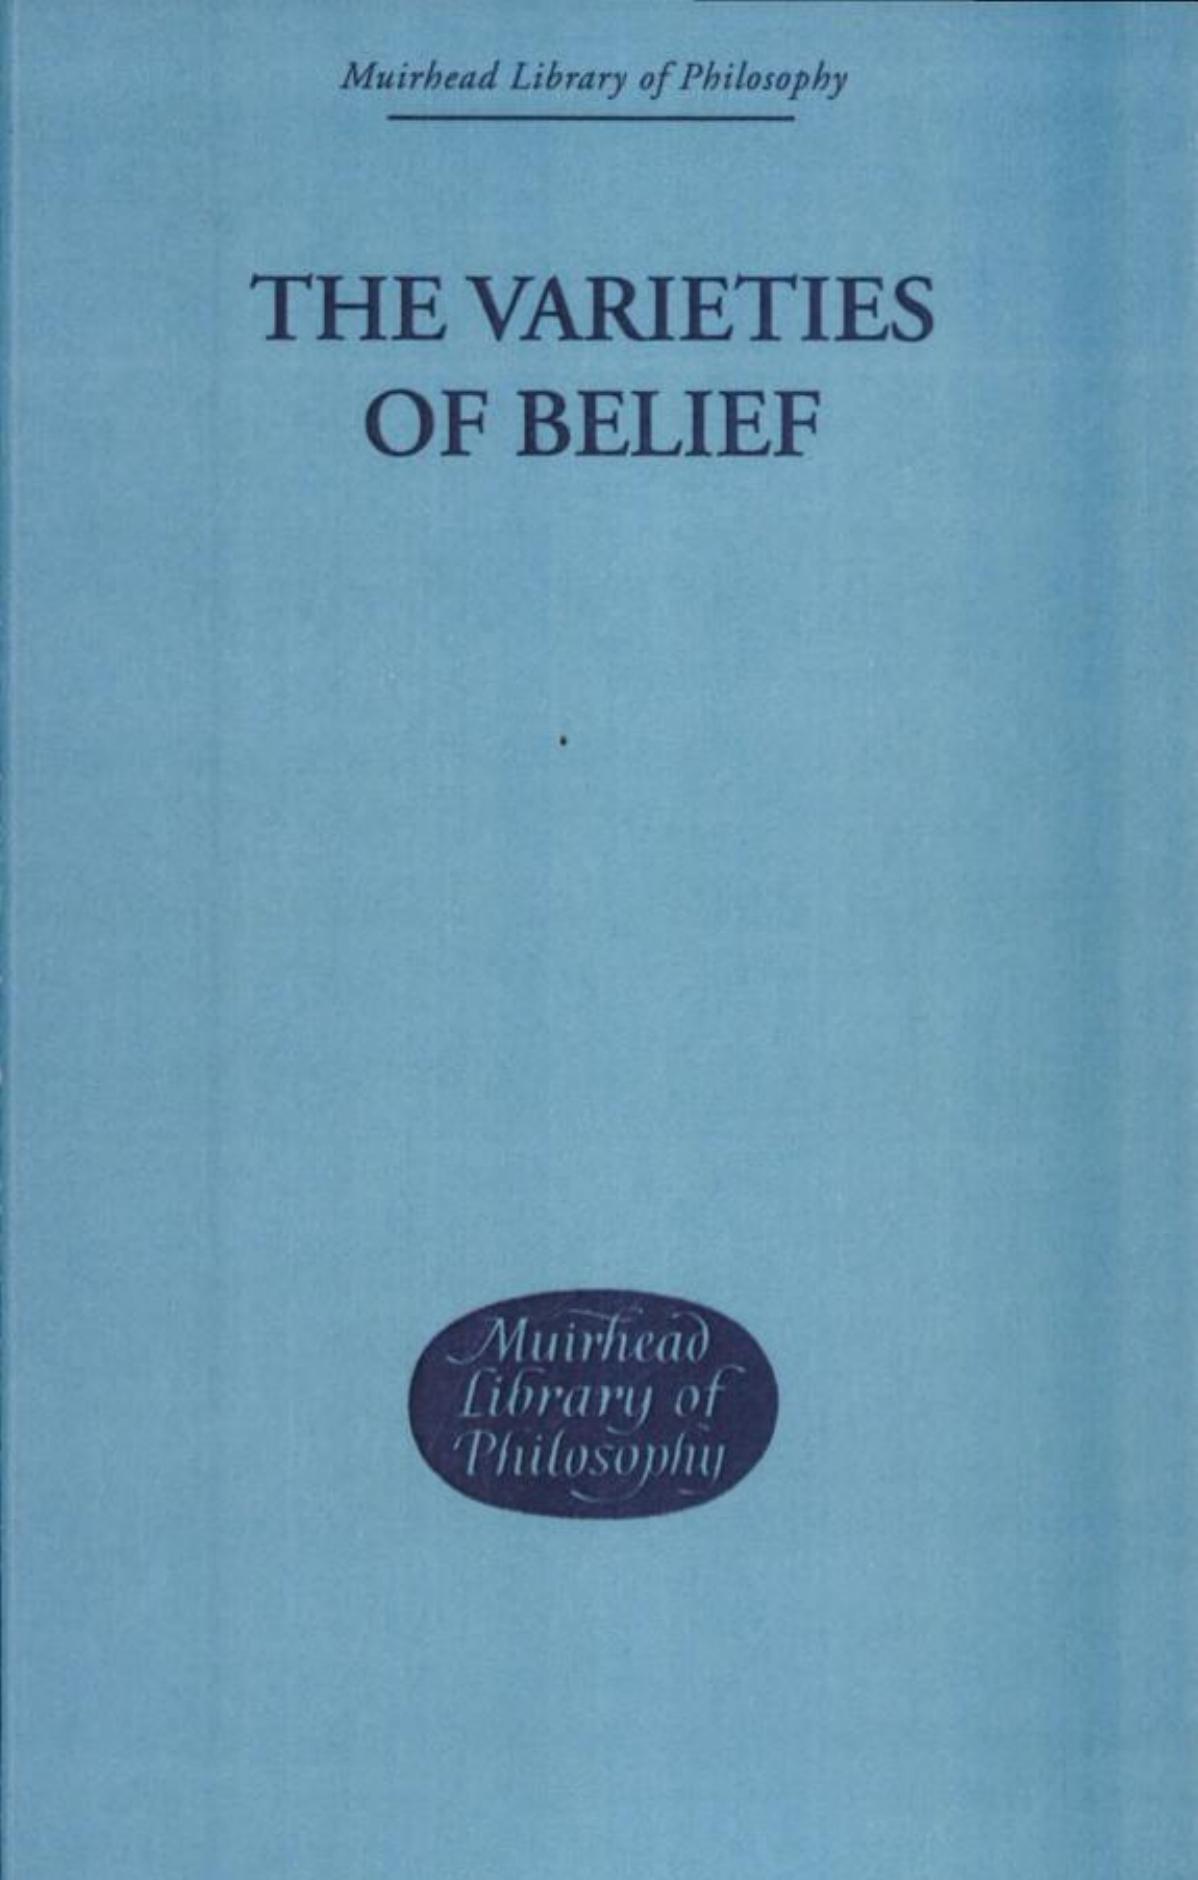 The Varieties of Belief